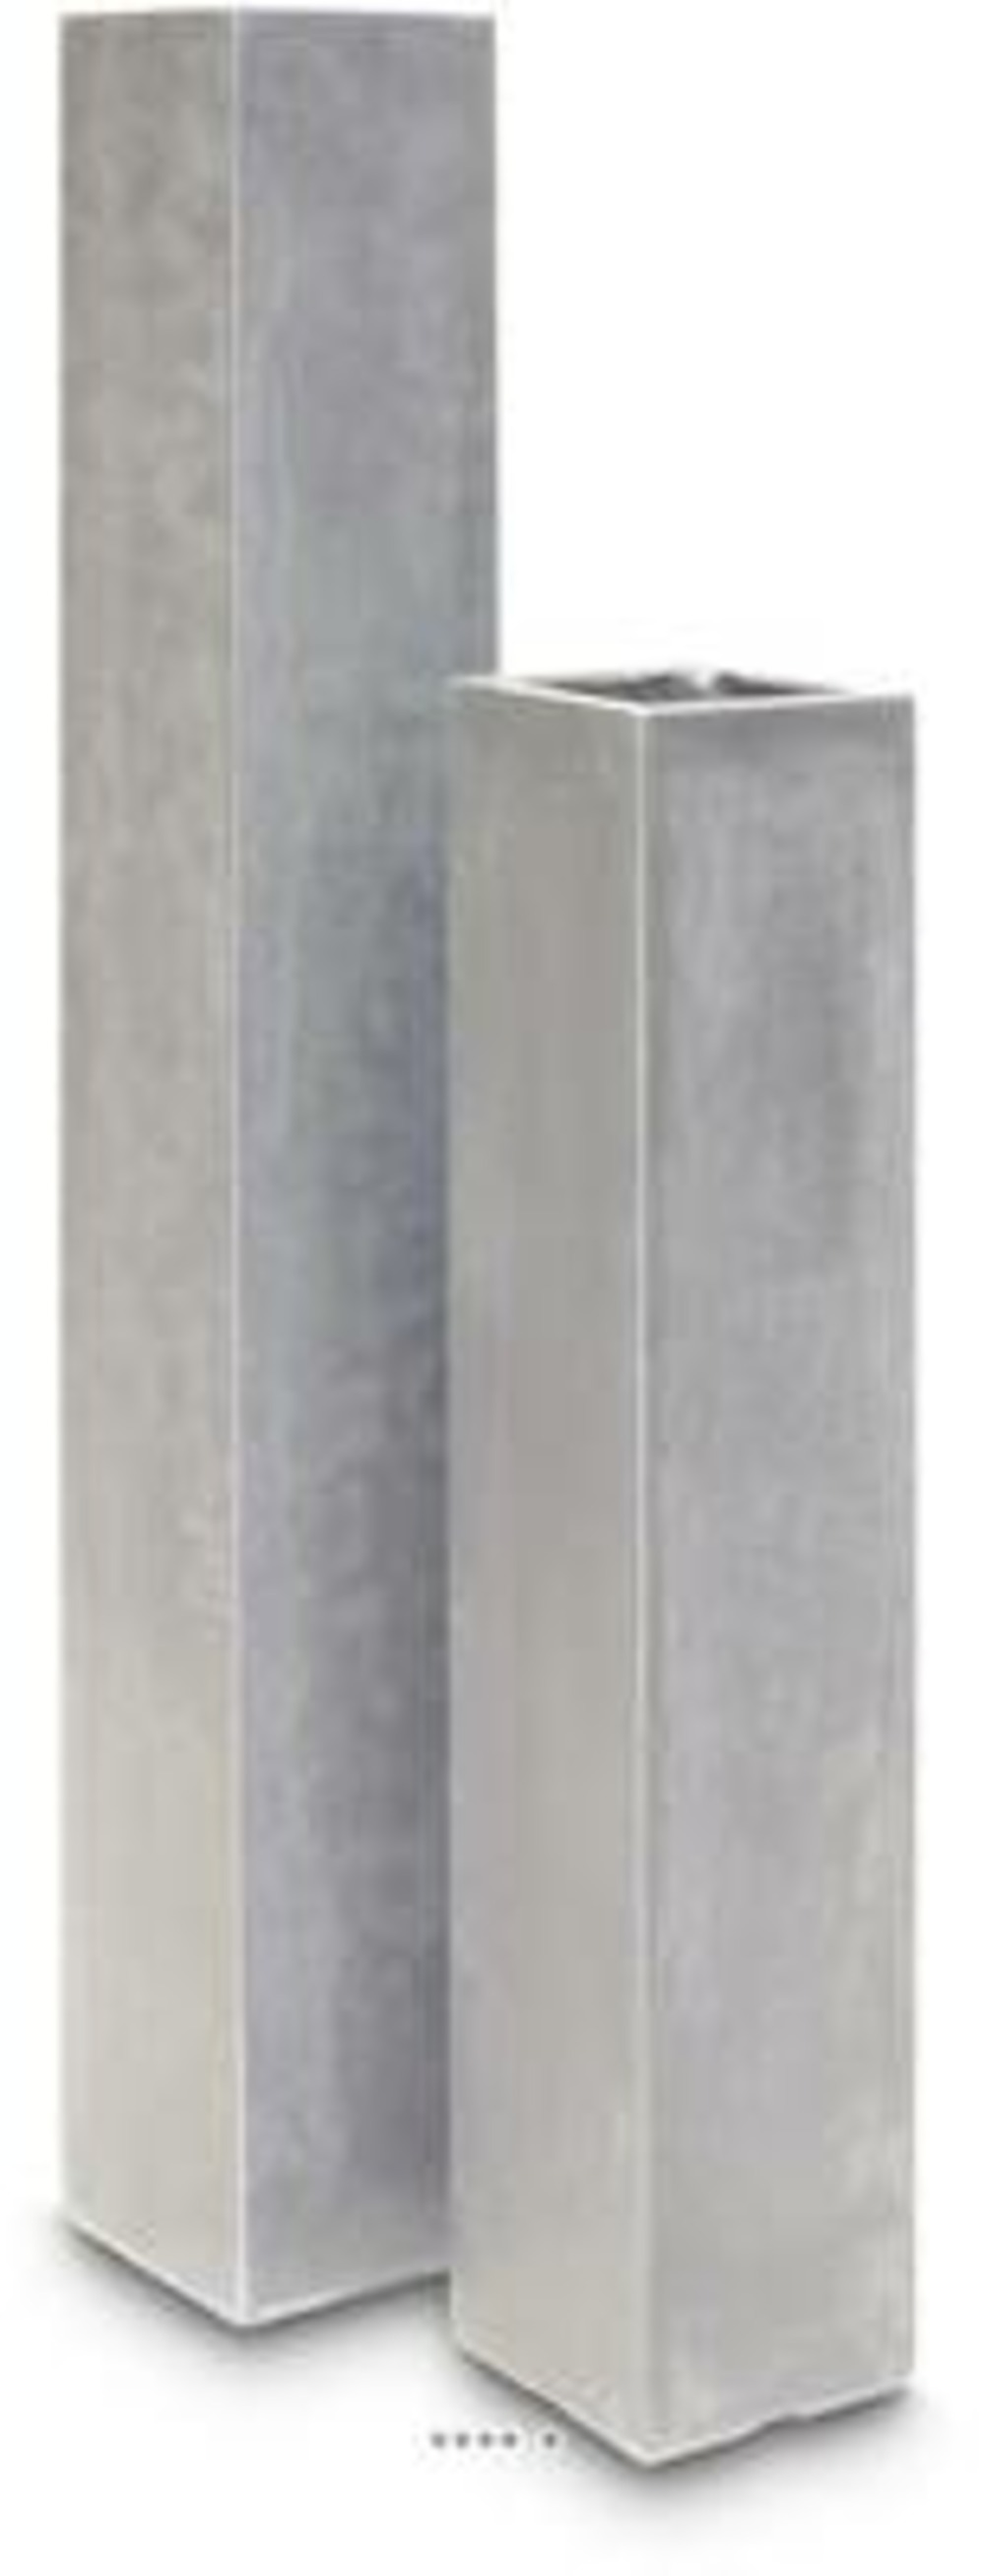 Bac fibres de verre et composite 23 x 23 cm h 114 cm ext. Carré colonne gris cla